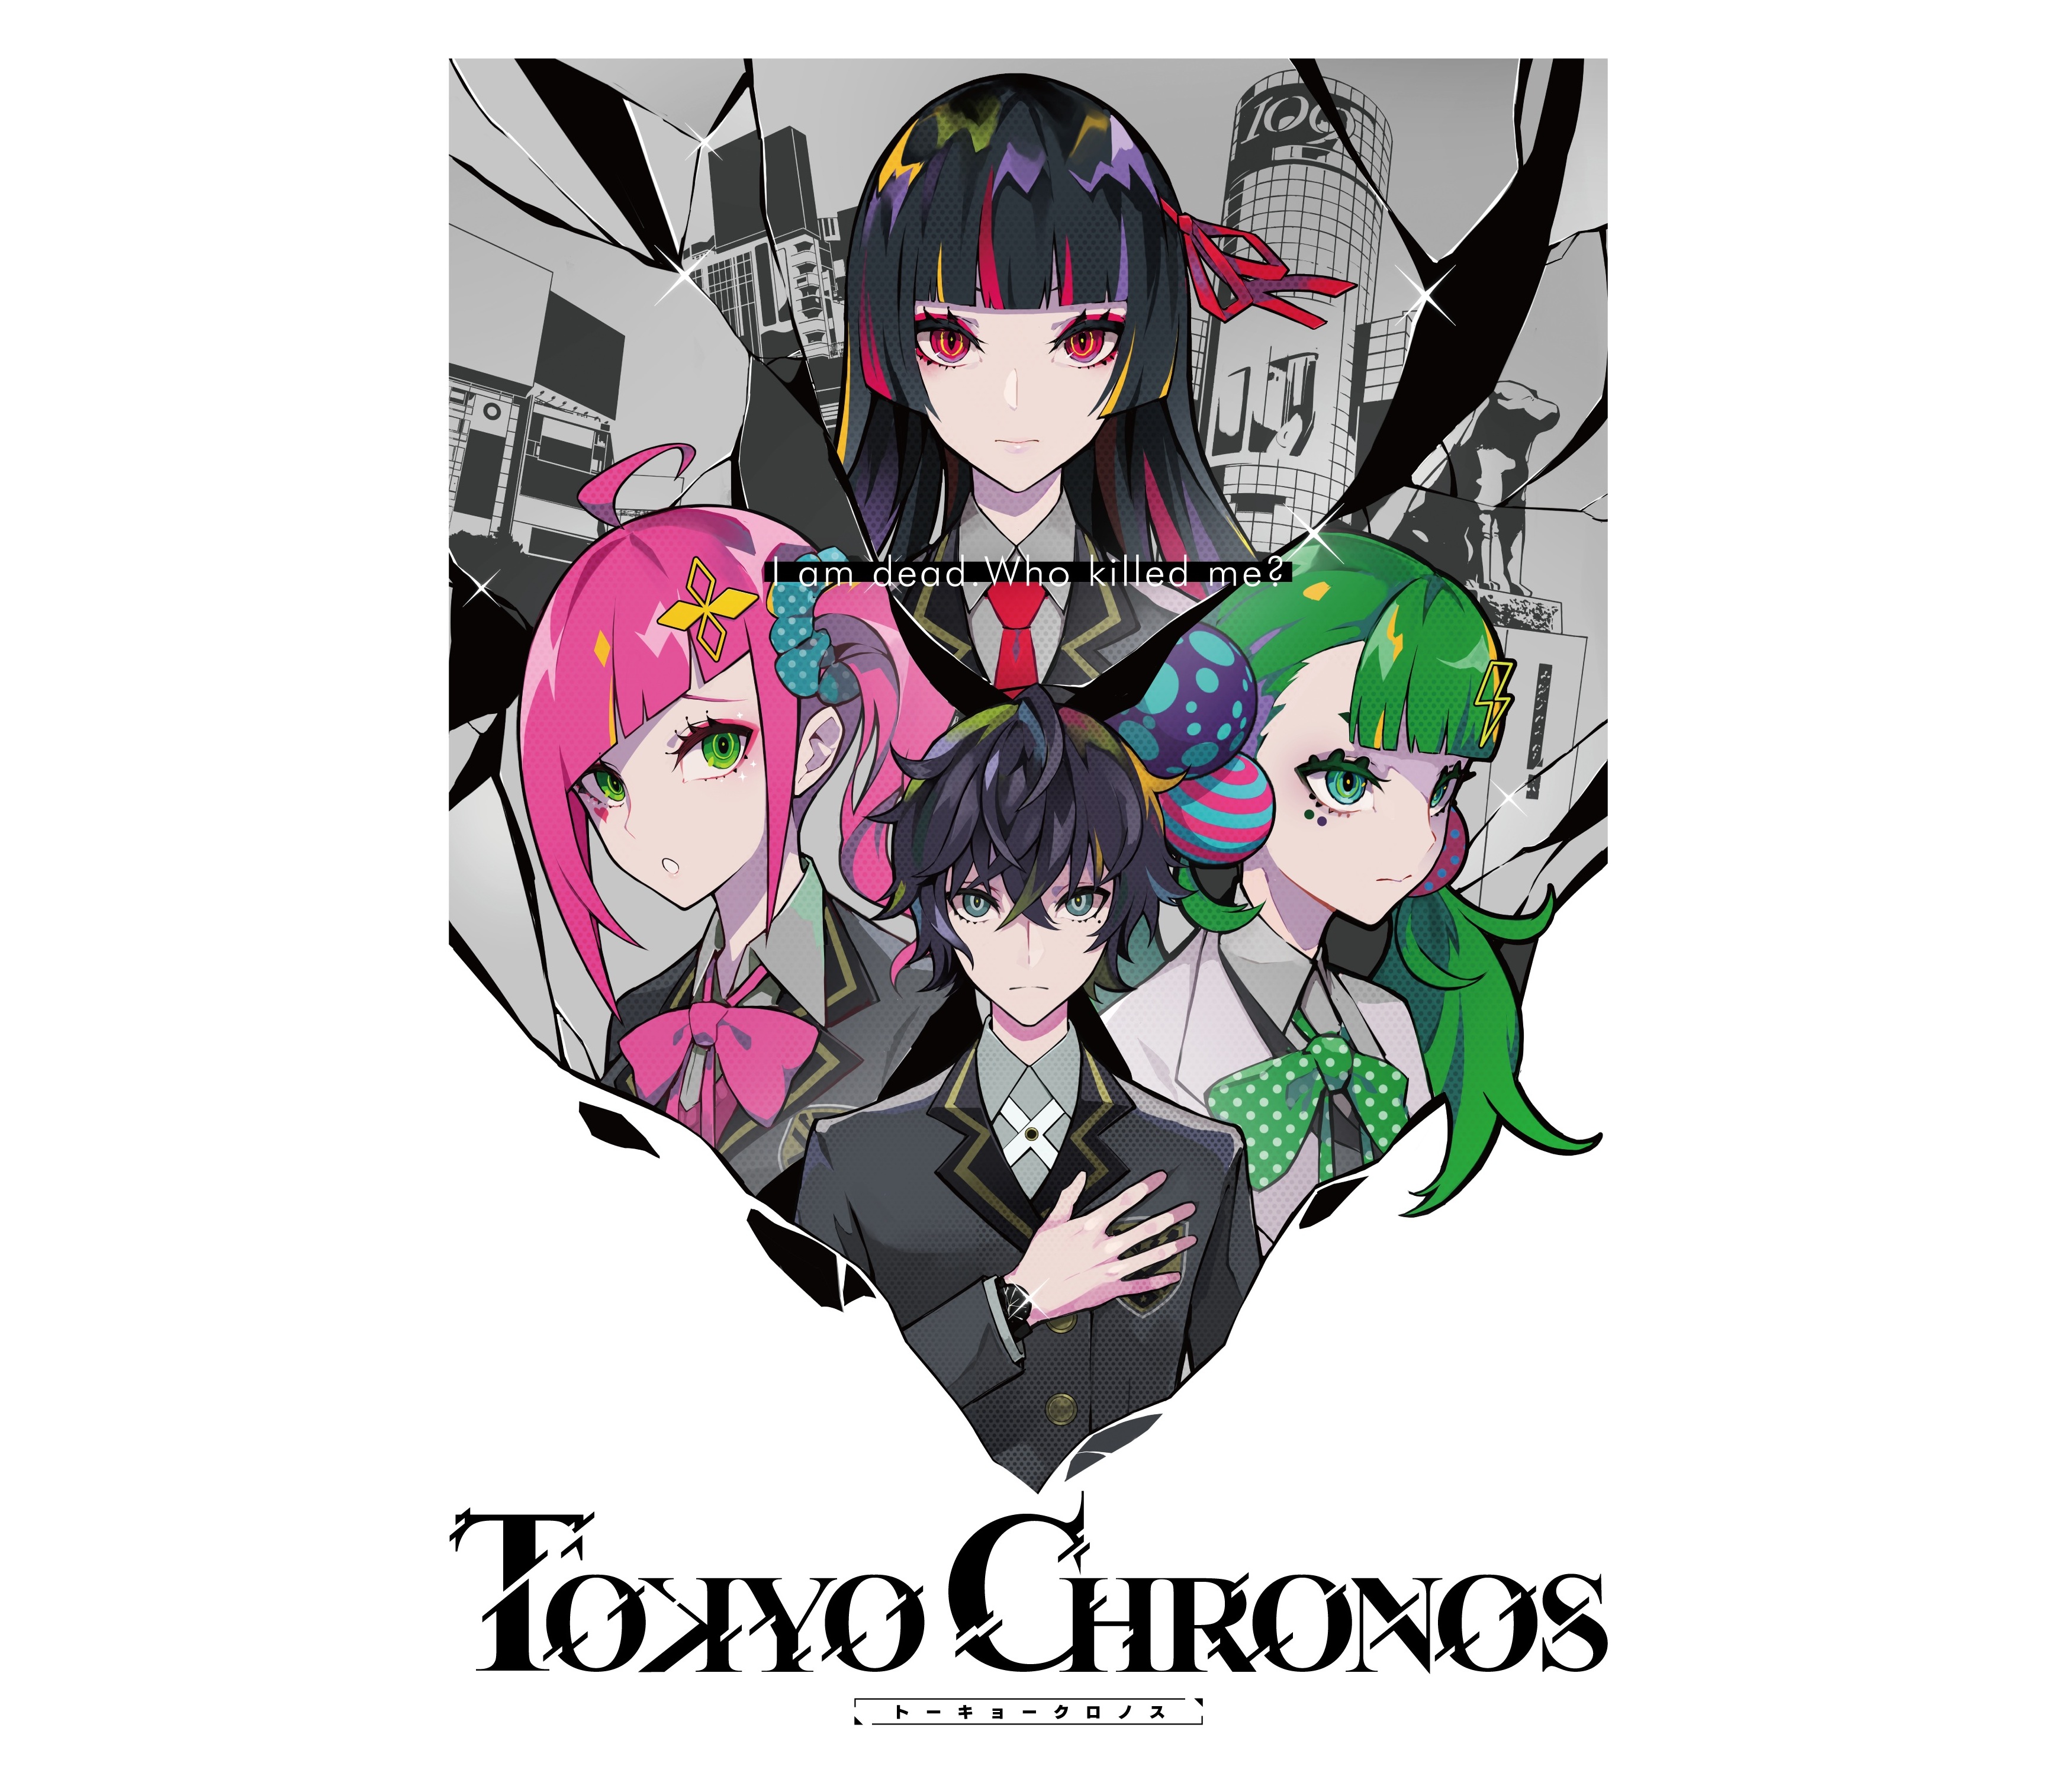 Chronos Ruler - Original Soundtrack : The Music of Chronos Ruler